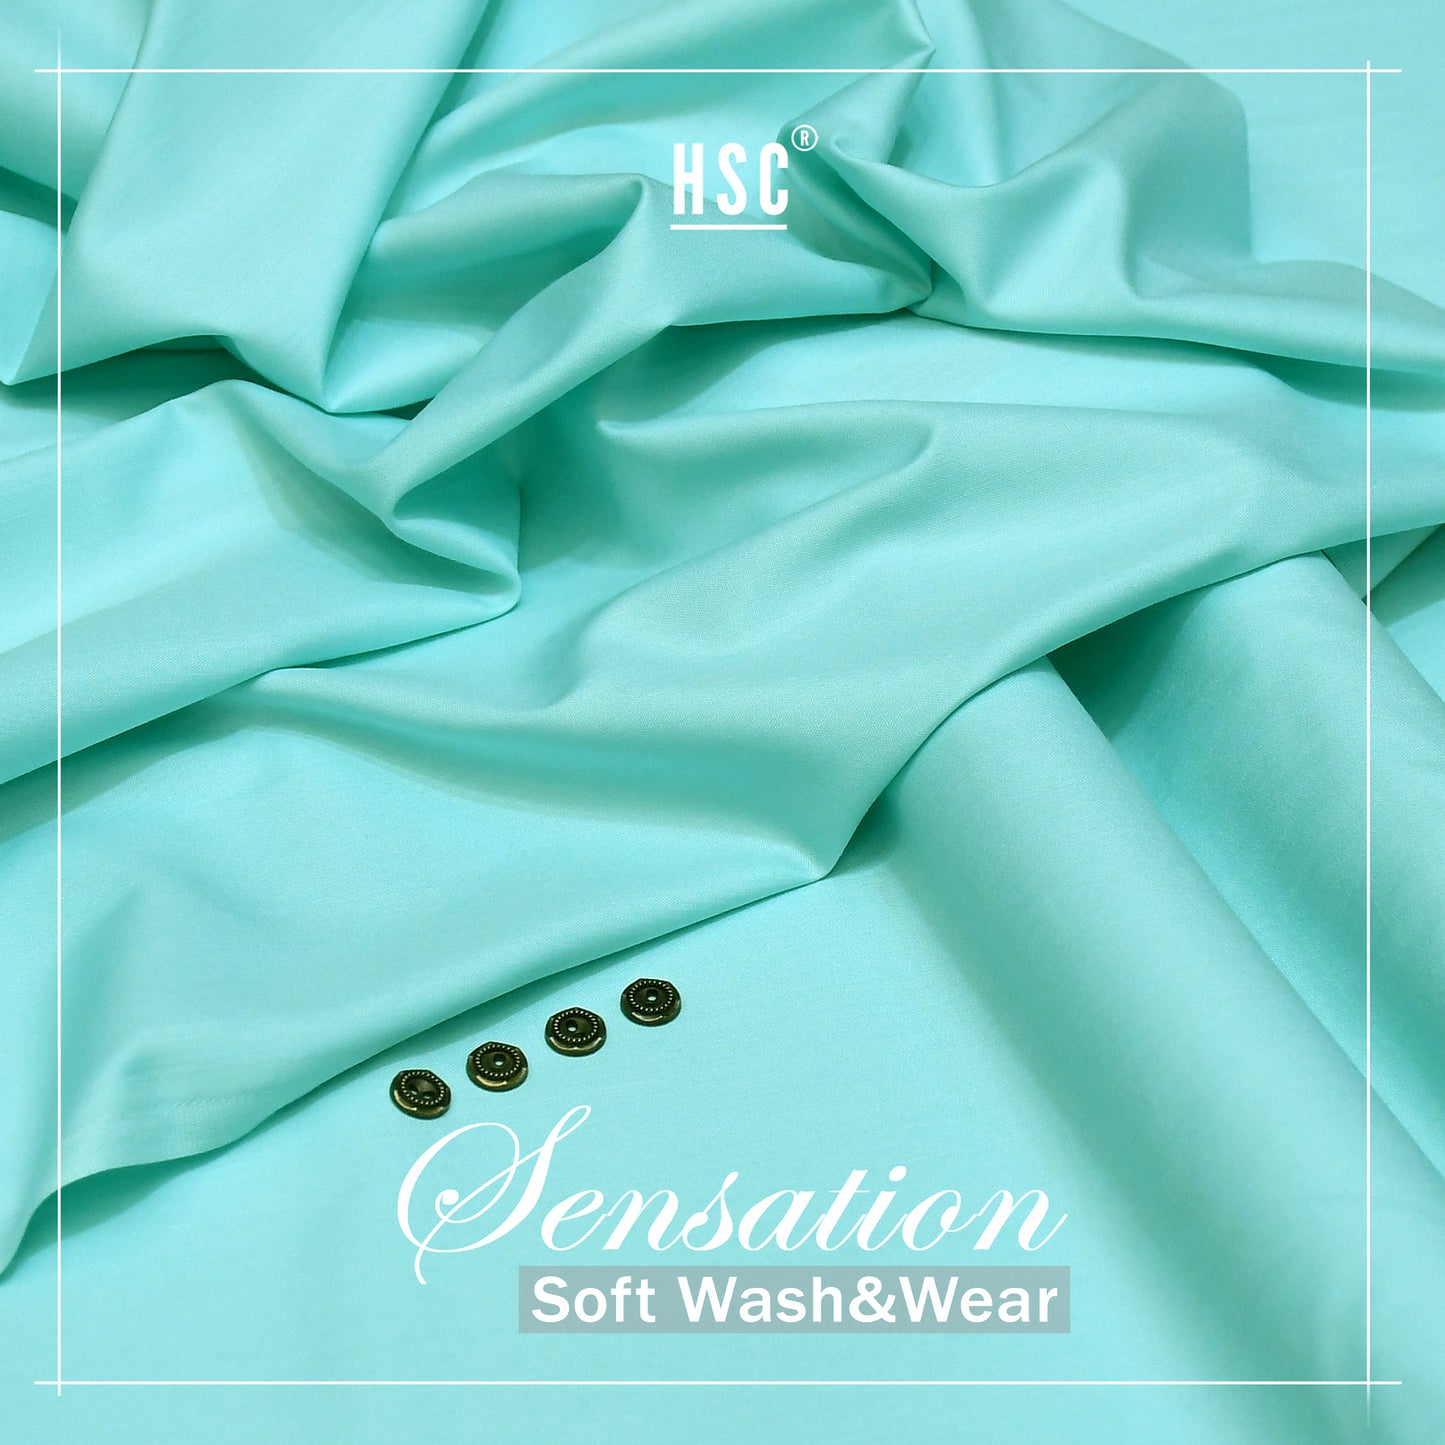 Buy 1 Get 1 Free Sensation Soft Wash&Wear - SSW9 HSC